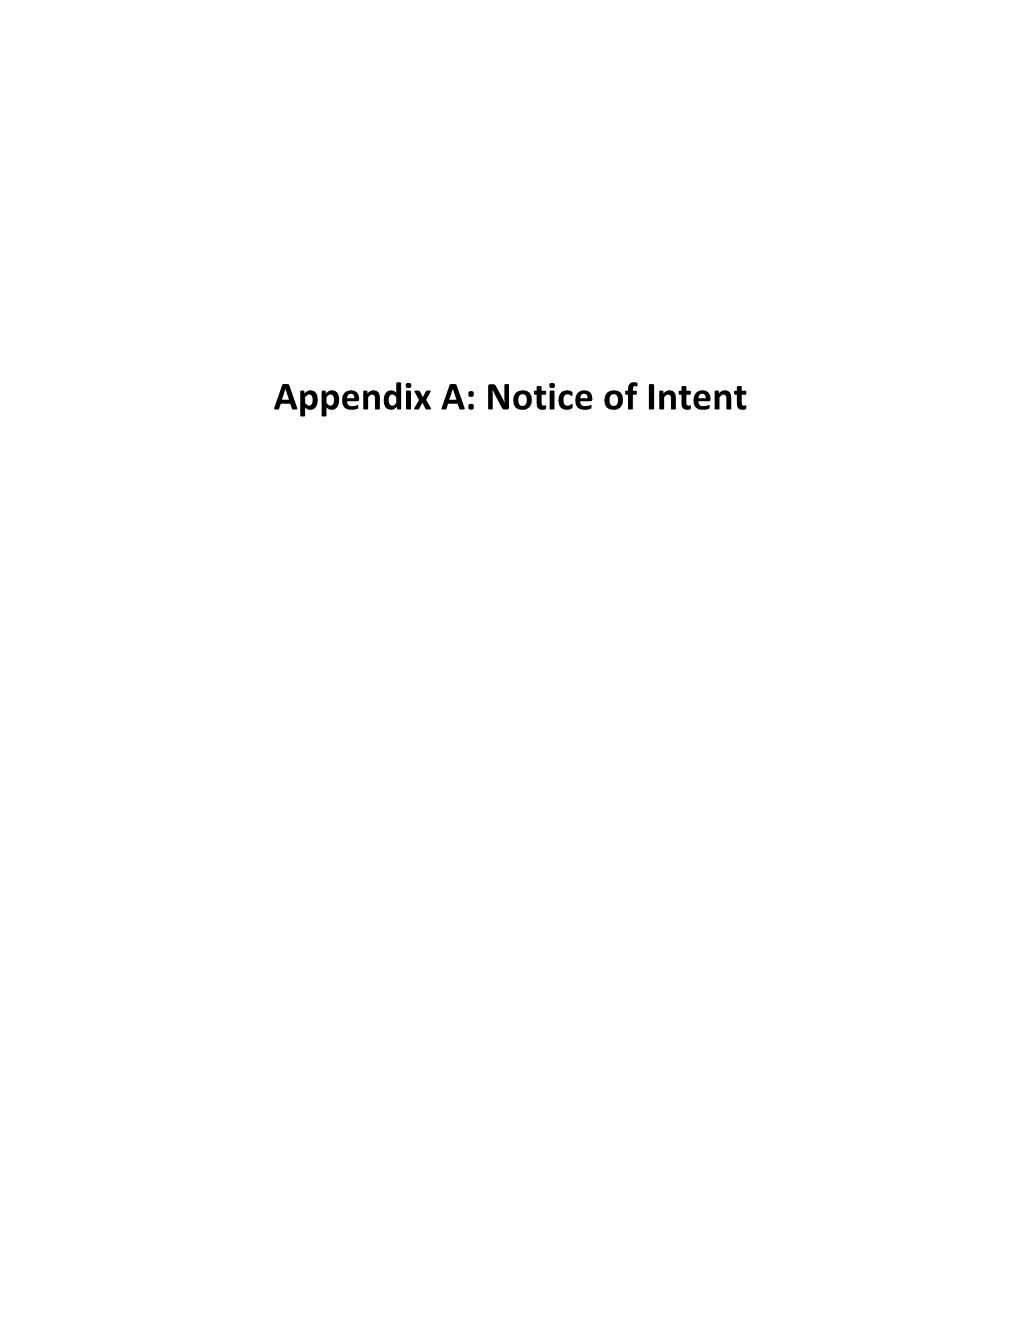 Appendix A: Notice of Intent Federal Register / Vol